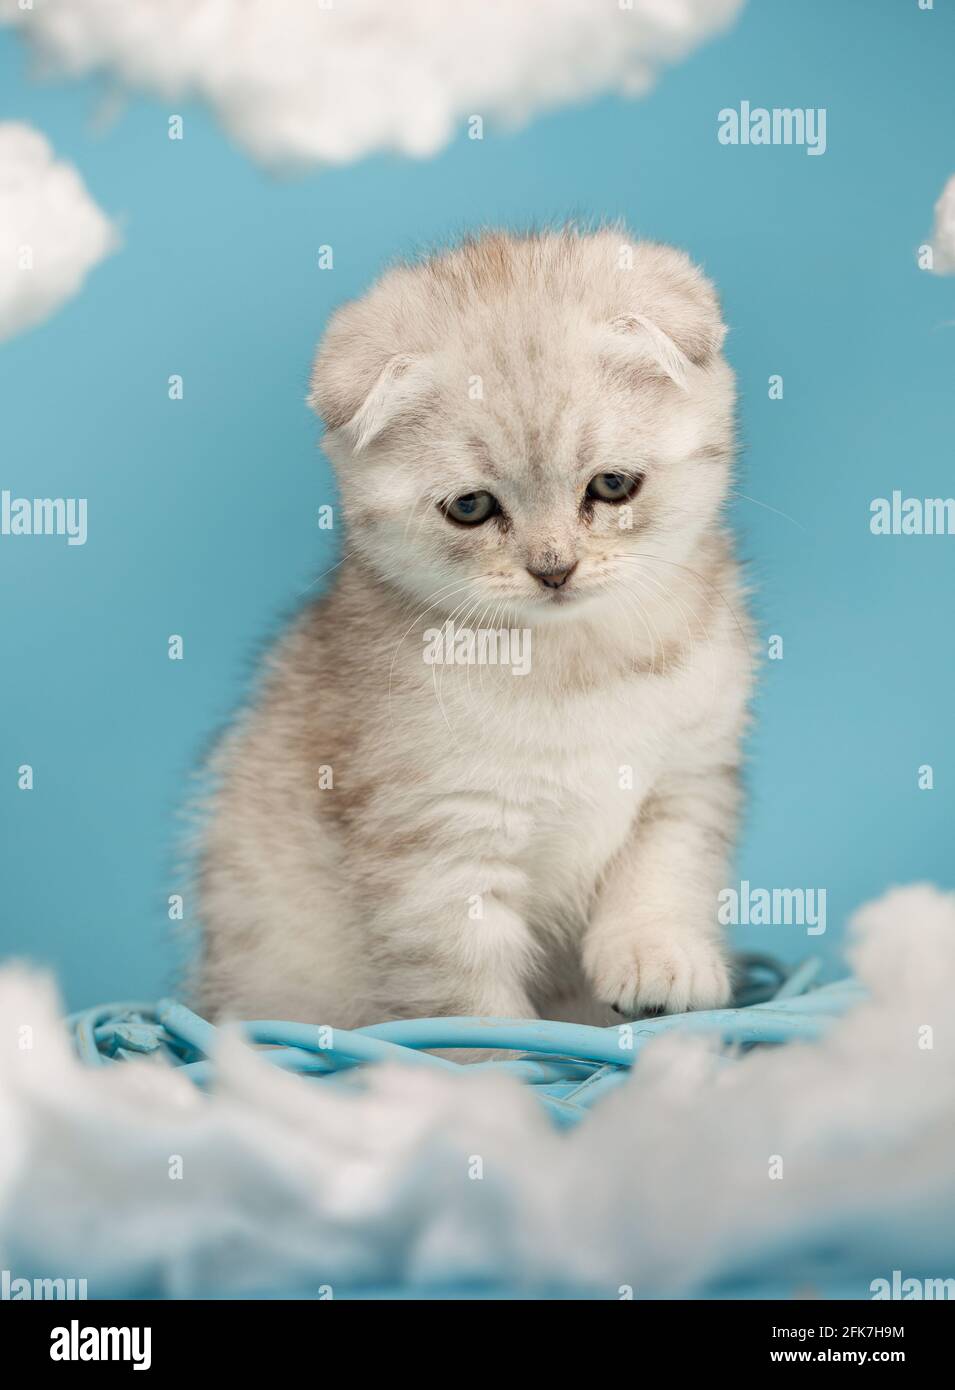 Il gattino scozzese che vuole giocare si siede con la testa in giù e guarda con attenzione il giocattolo su uno sfondo blu. Cielo sfondo con nuvole di cotone intorno Foto Stock